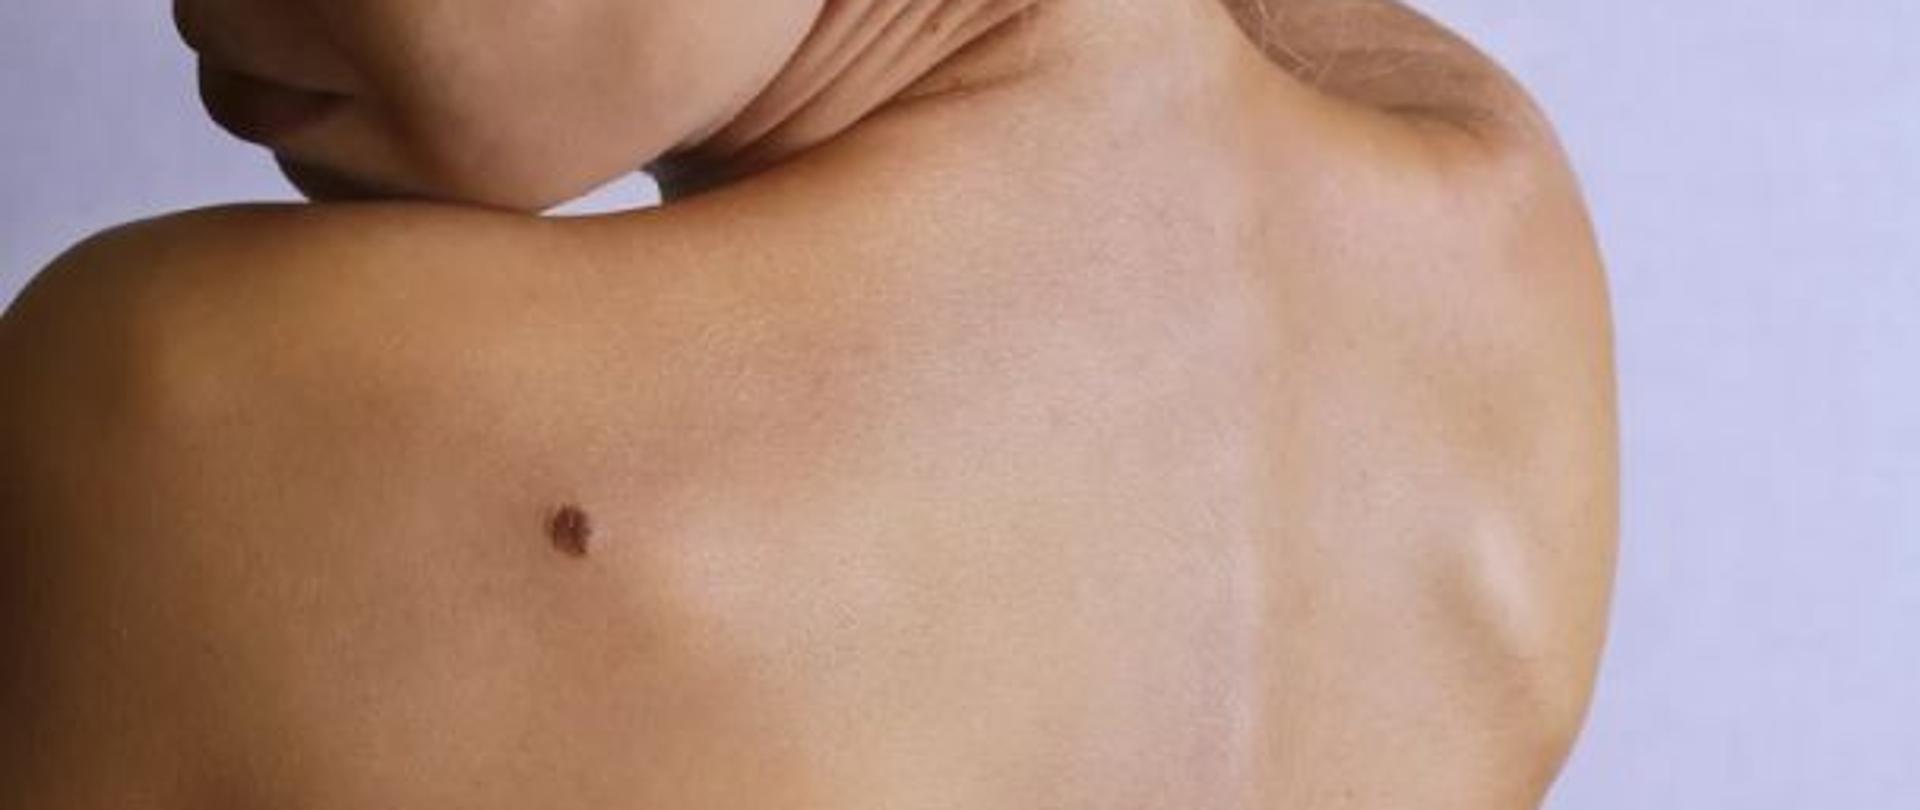 Zdjęcie przedstawia czerniaka na plecach kobiety